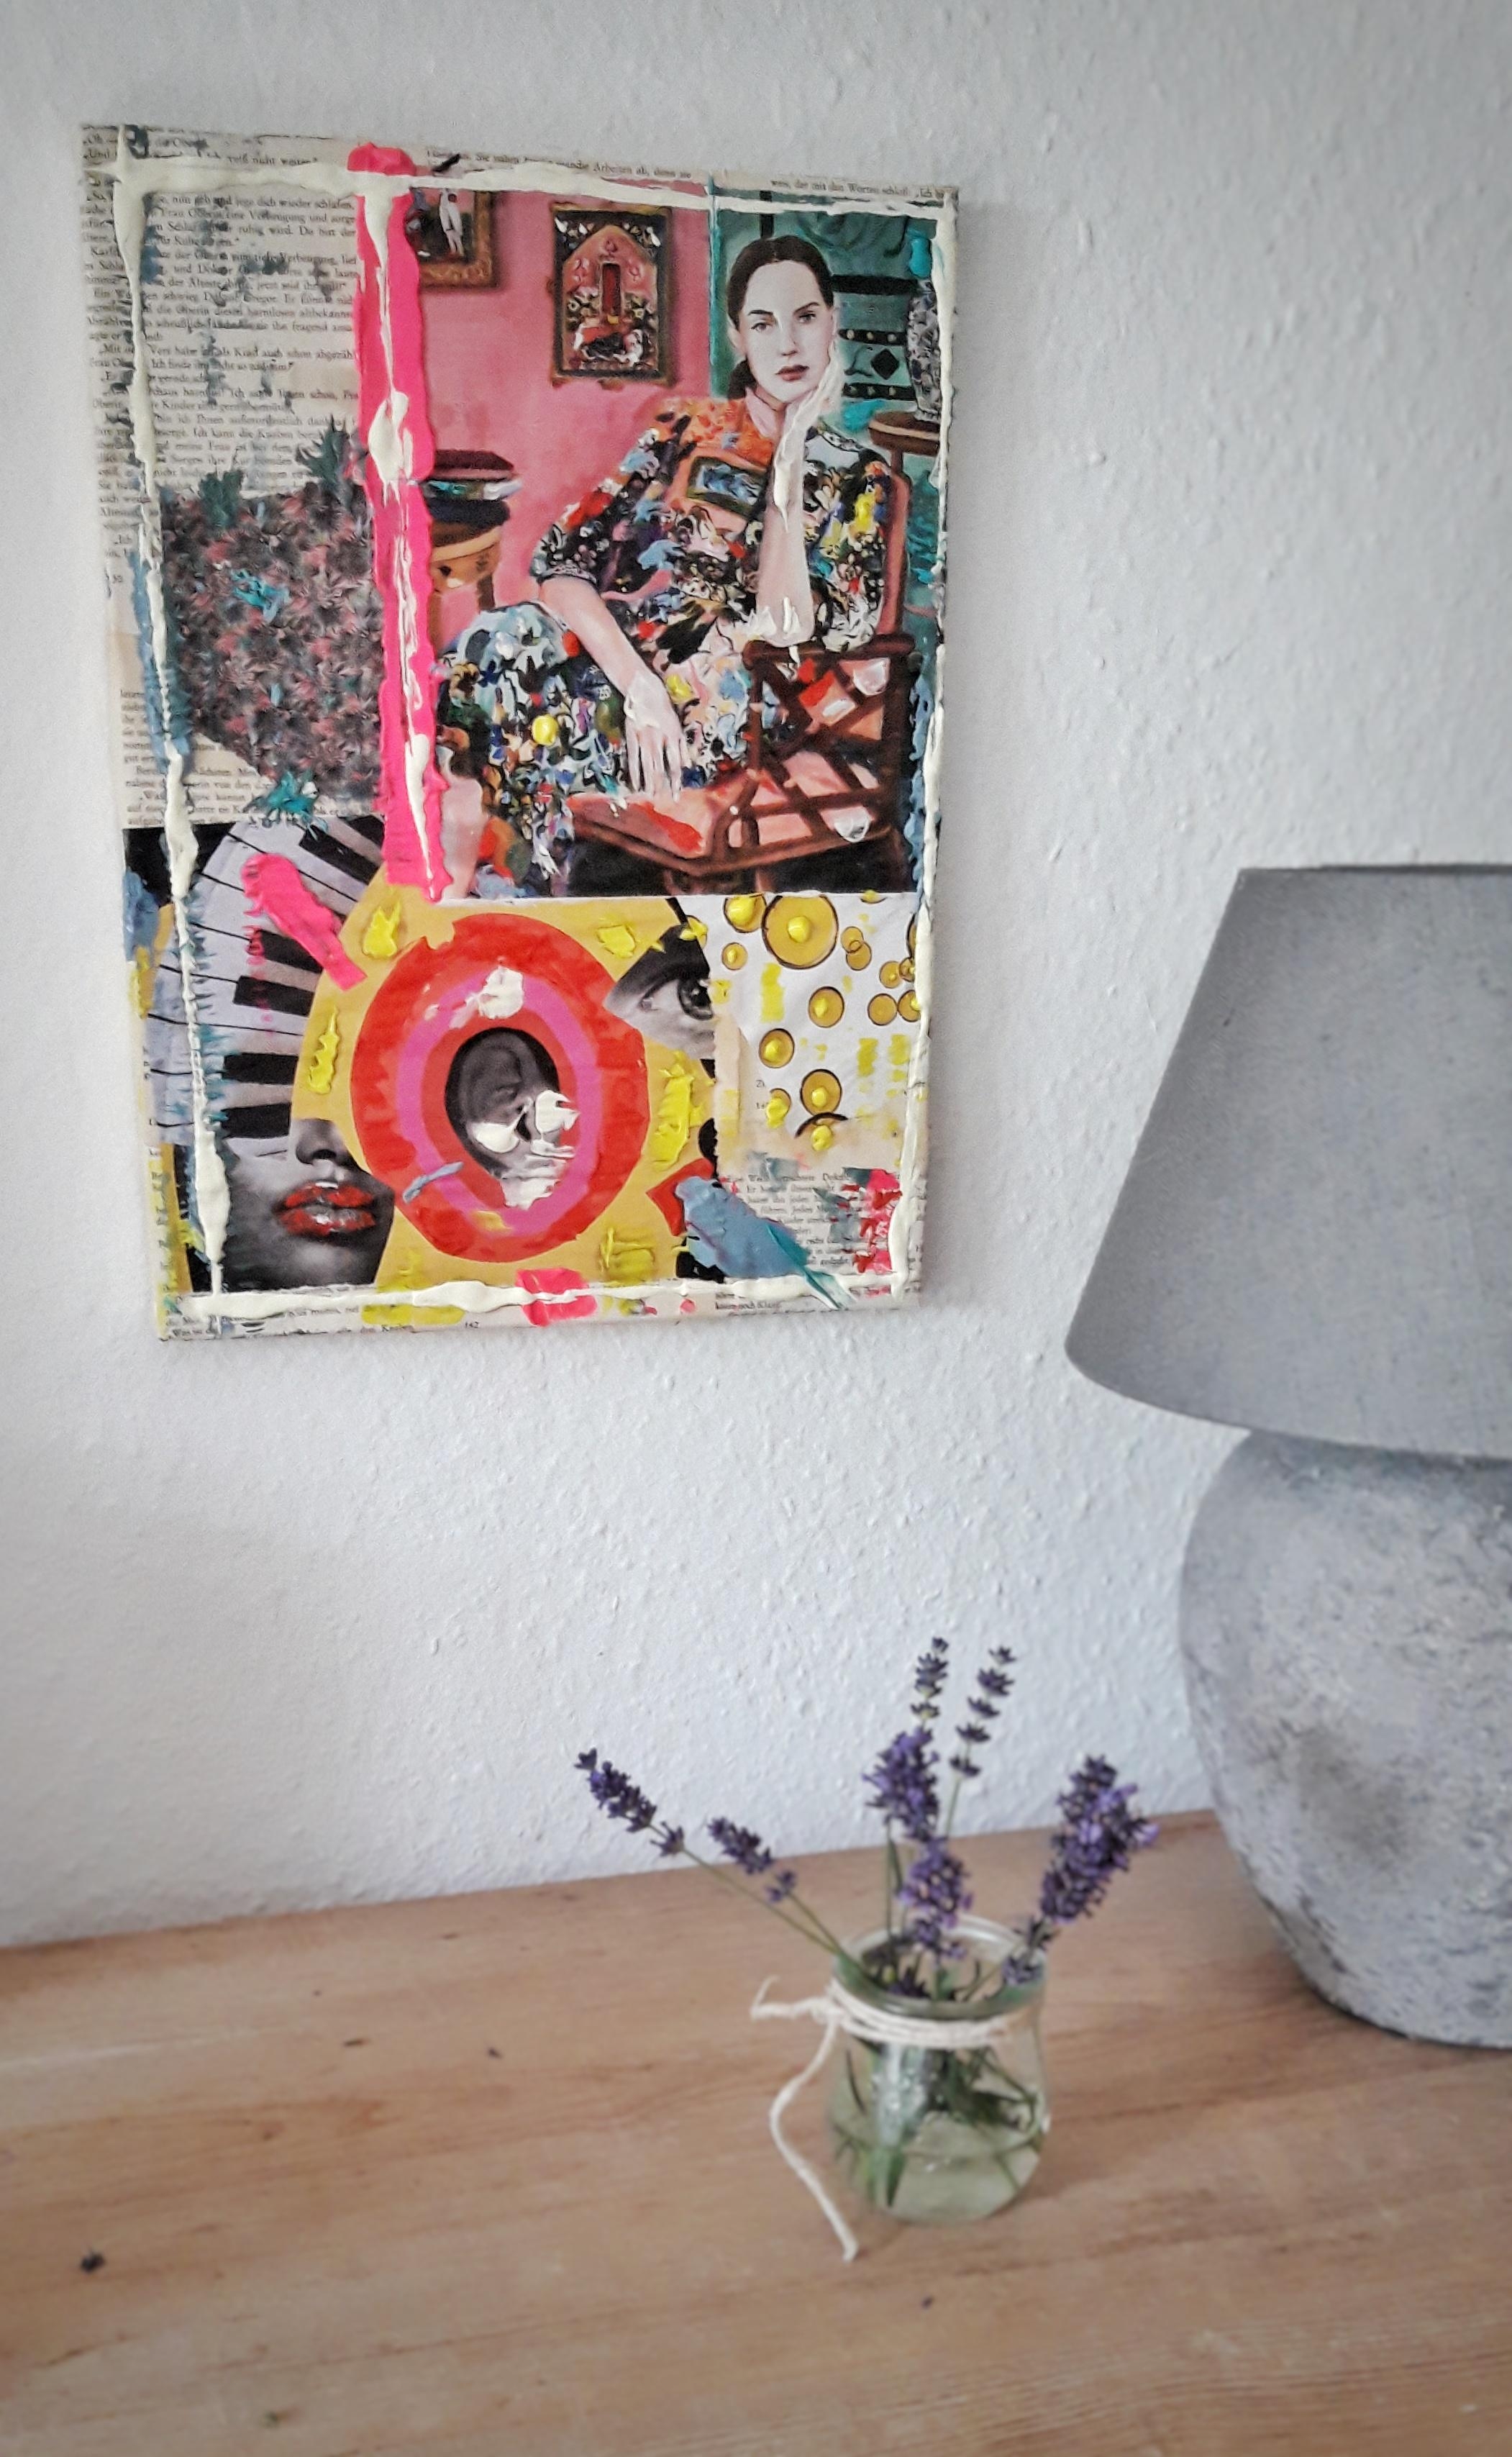 Magazin-, Buchschnipsel, Acrylfarben und ein altes Bild, ergeben ein Kunstwerk. #artwork #homedecor #diyidea